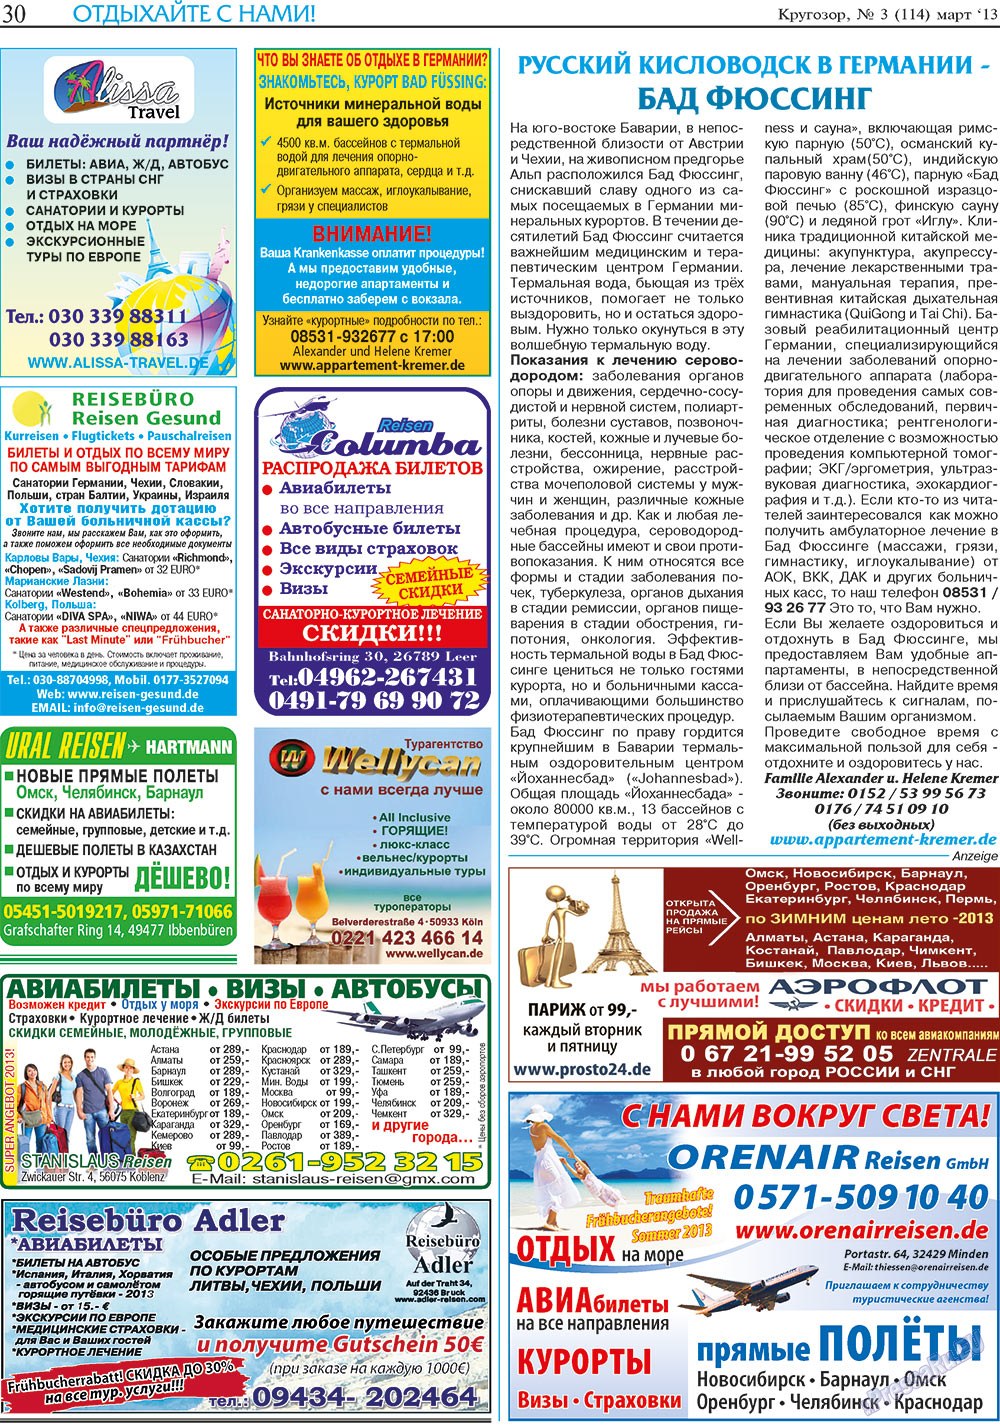 Кругозор (газета). 2013 год, номер 3, стр. 30